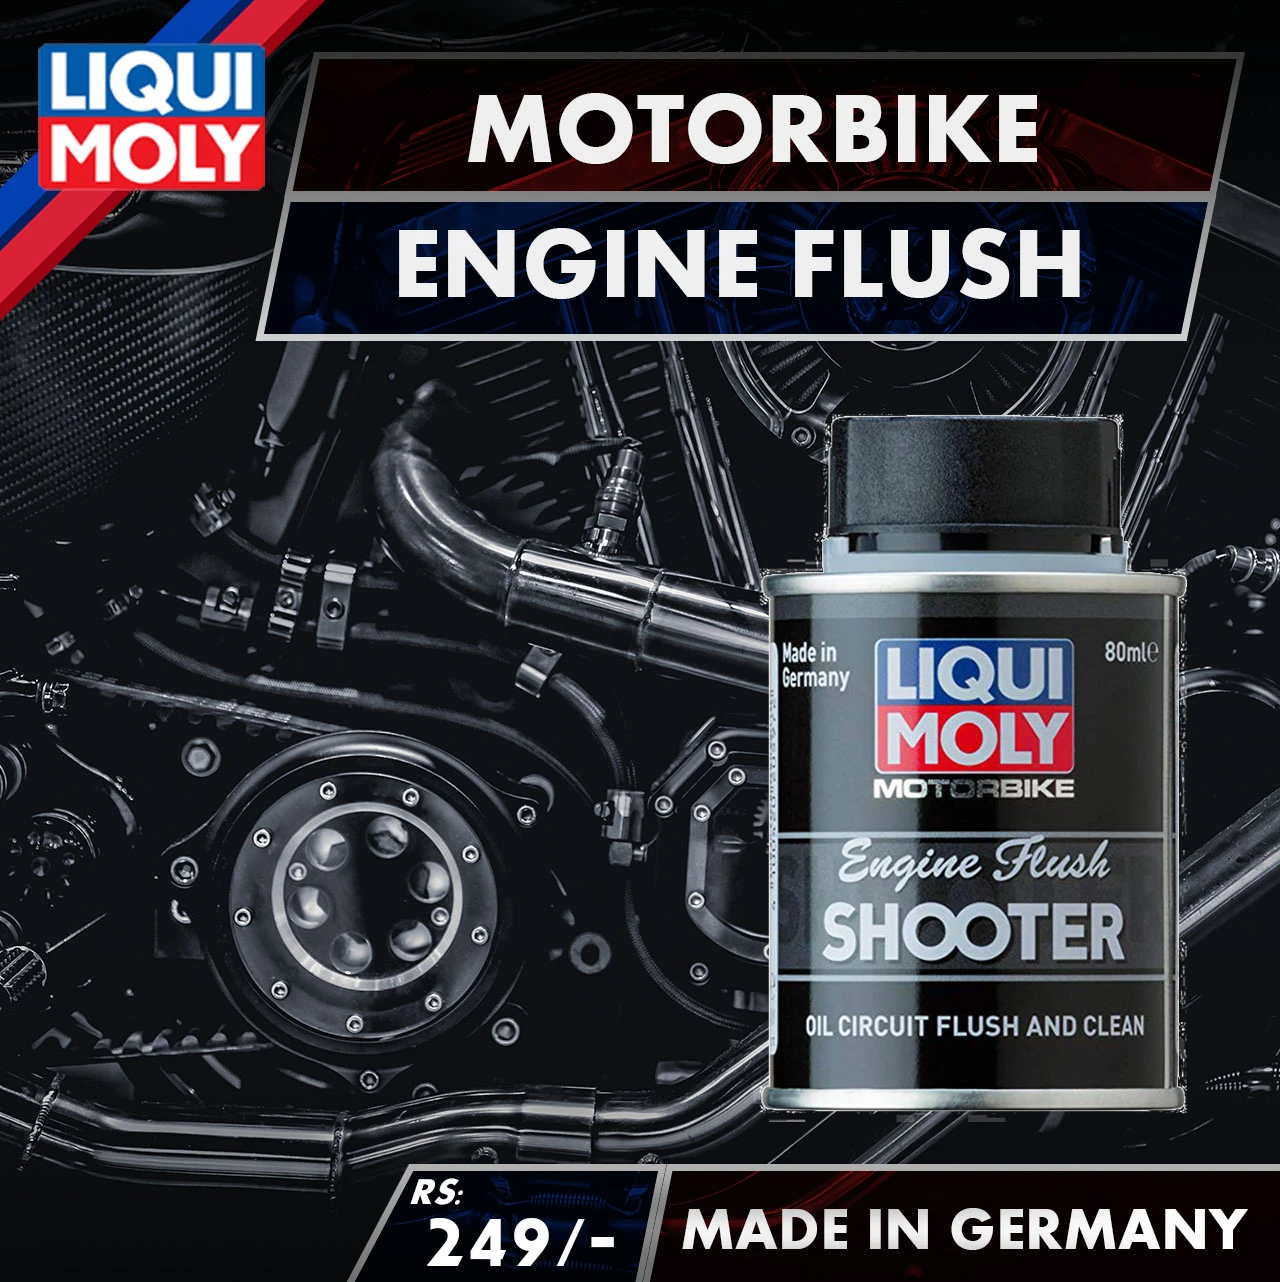 Liqui Moly Motorcycle Engine Flush